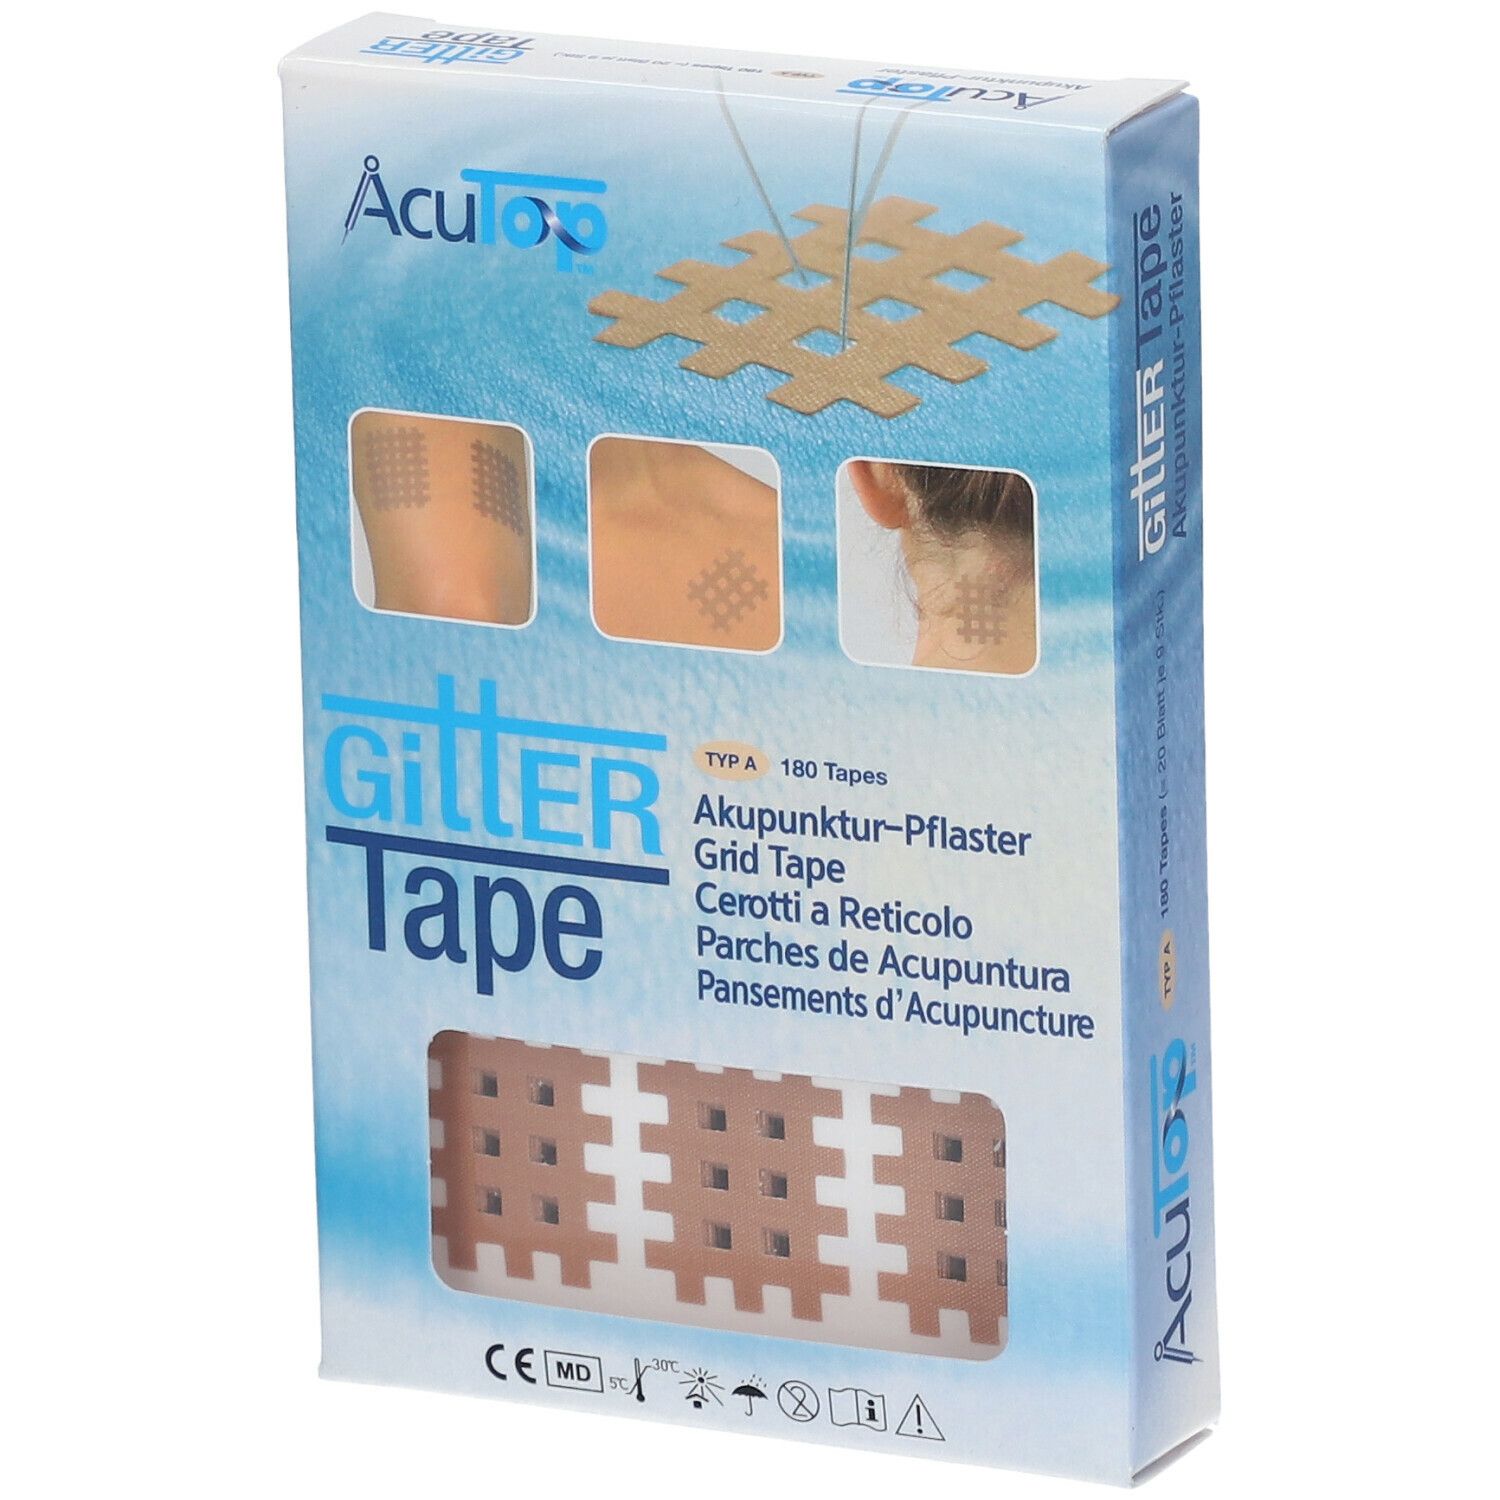 AcuTop™ Gitter Tape Akupunktur-Pflaster 2 cm x 3 cm 20x9 St Pflaster